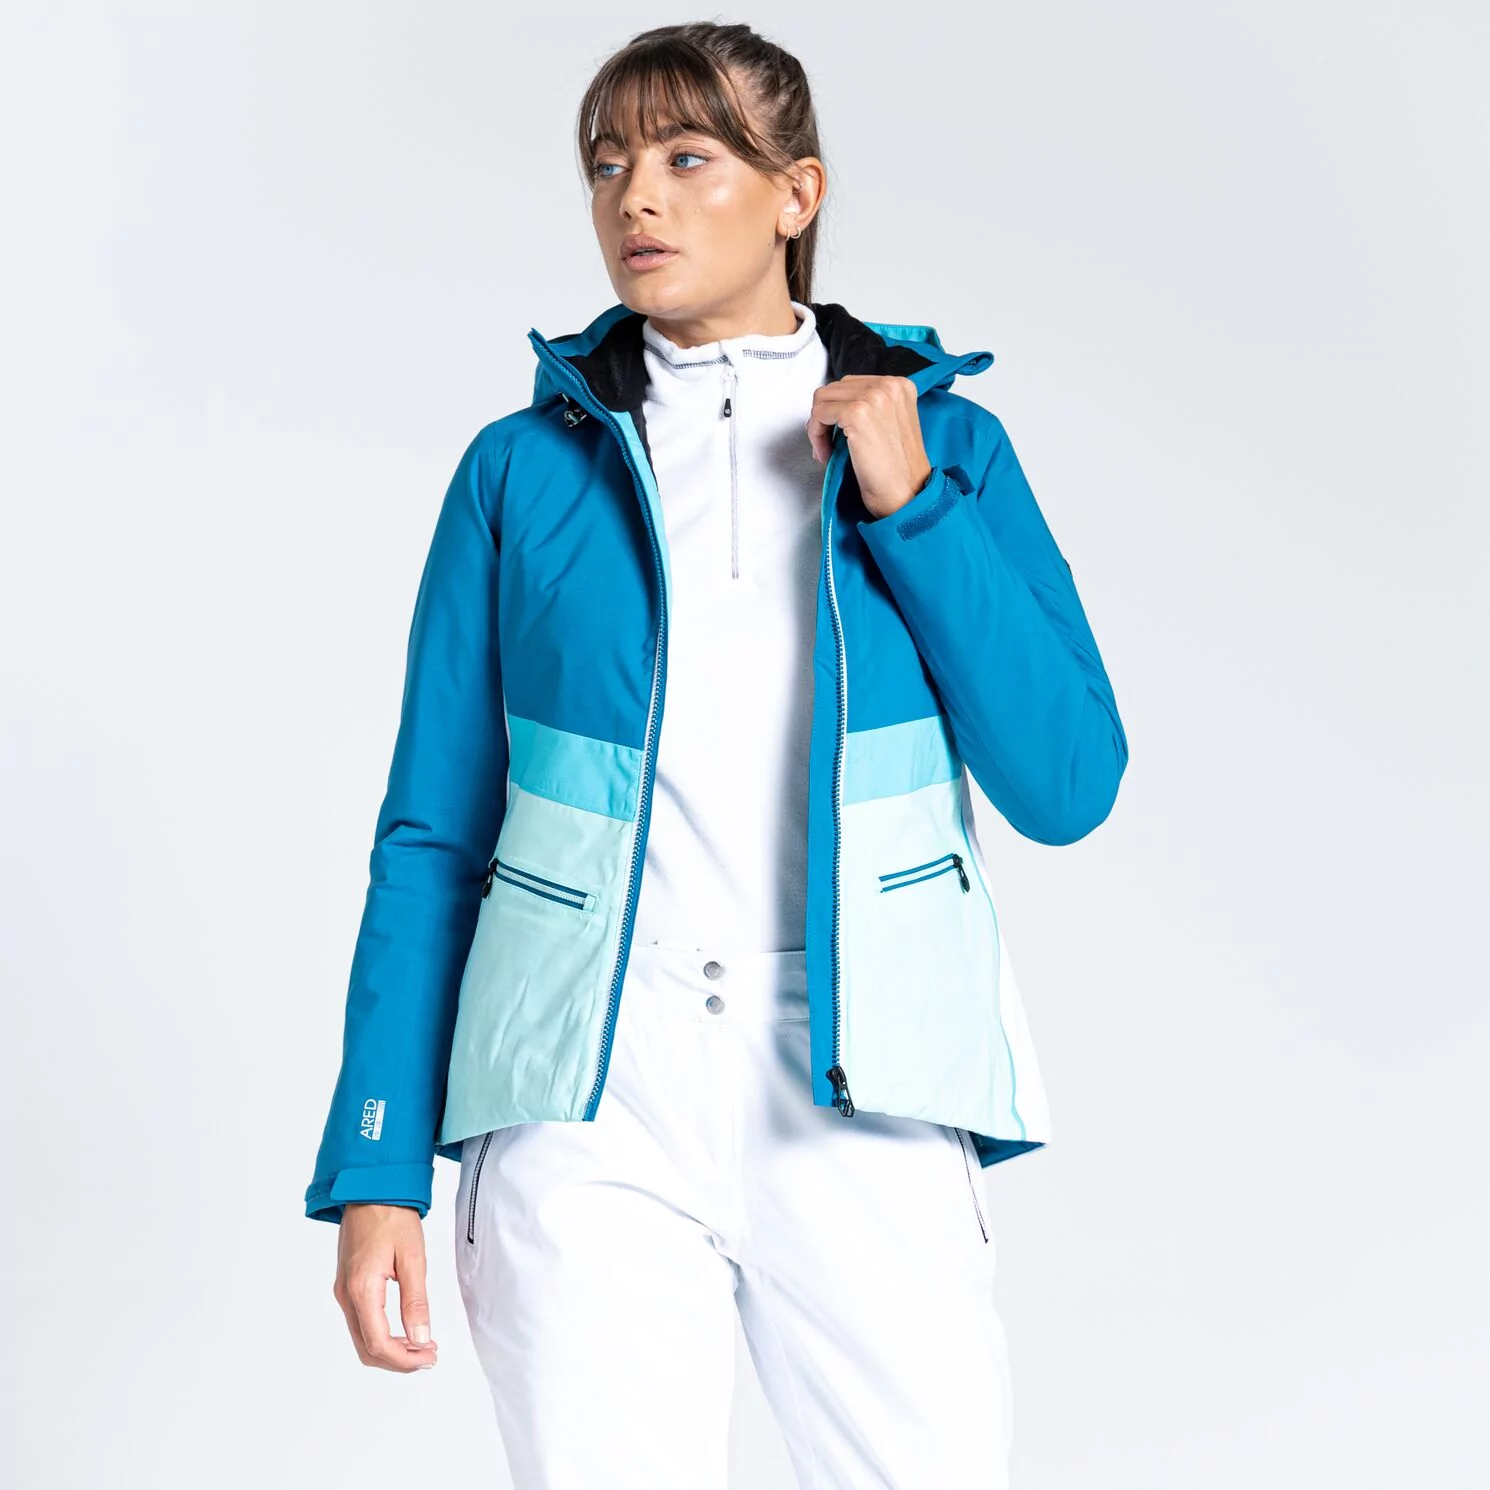 Damska kurtka narciarska z elektrycznym ogrzewaniem Dare2b Equalise Jacket  niebieska Rozmiar: 46 (UK 20) - Ceny i opinie na Skapiec.pl